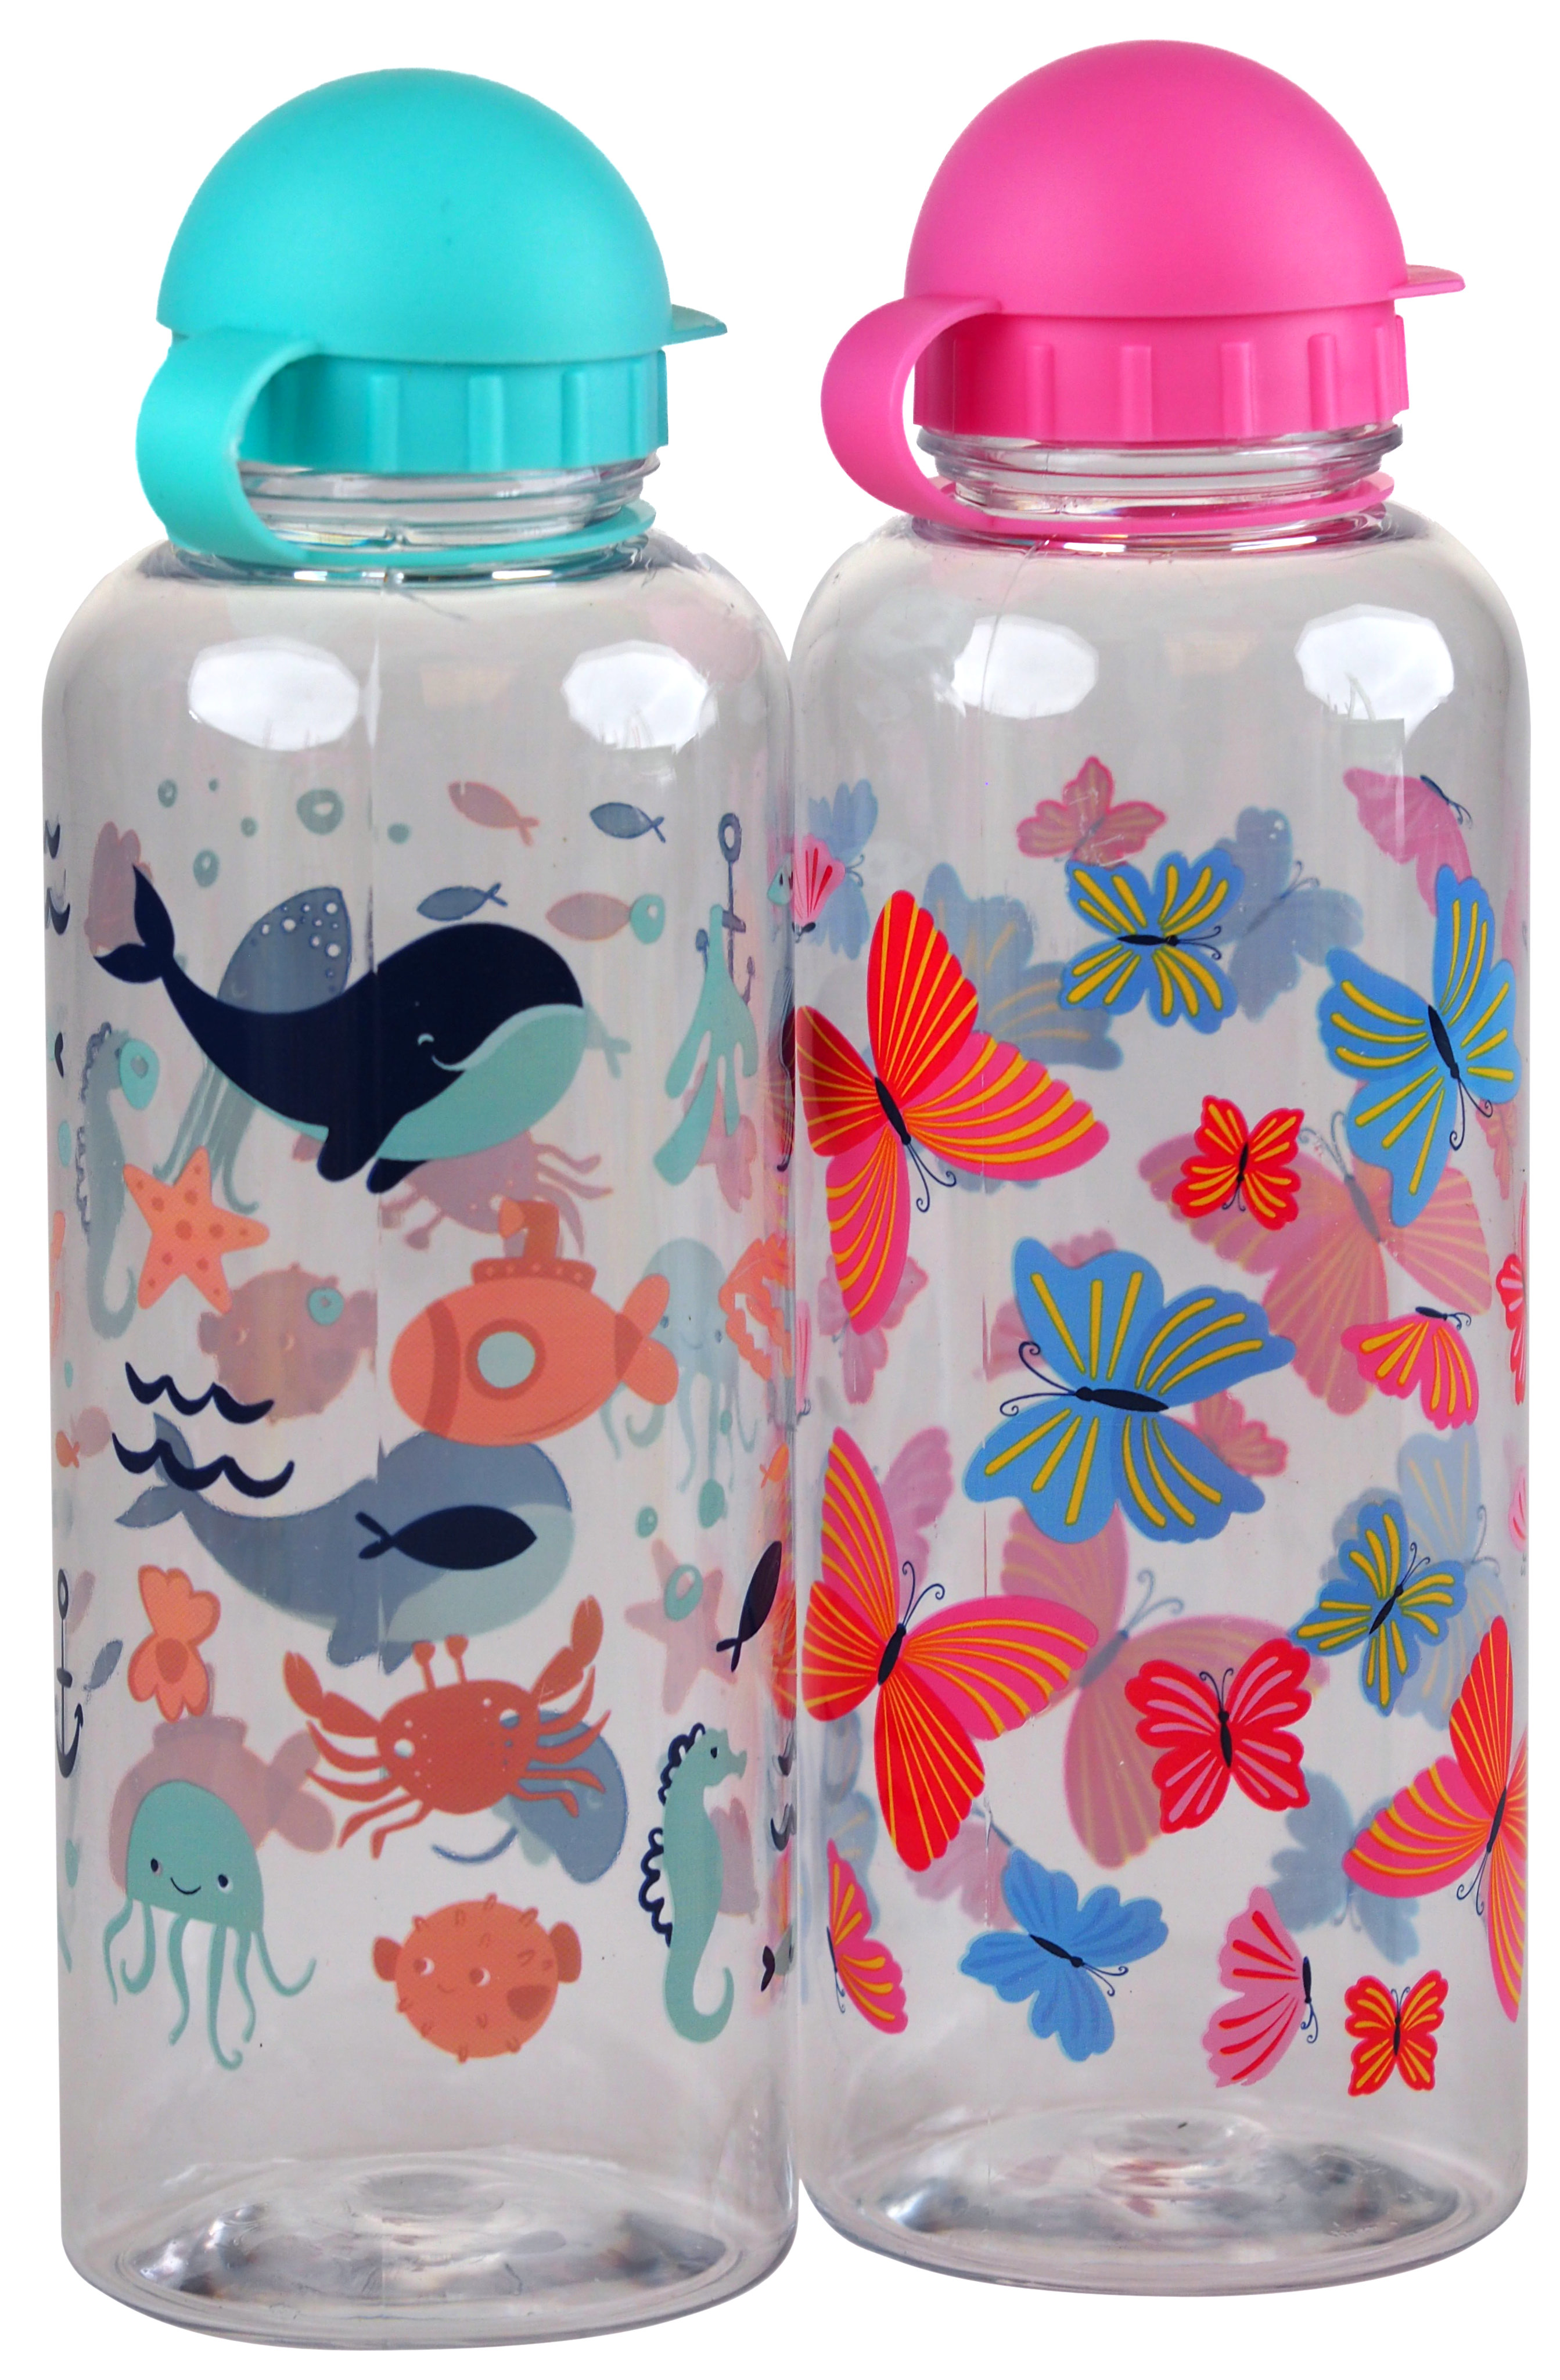 Childs Nursery School Drinking Juice Bottle Flask - Sealife Butterfly - Set of 2